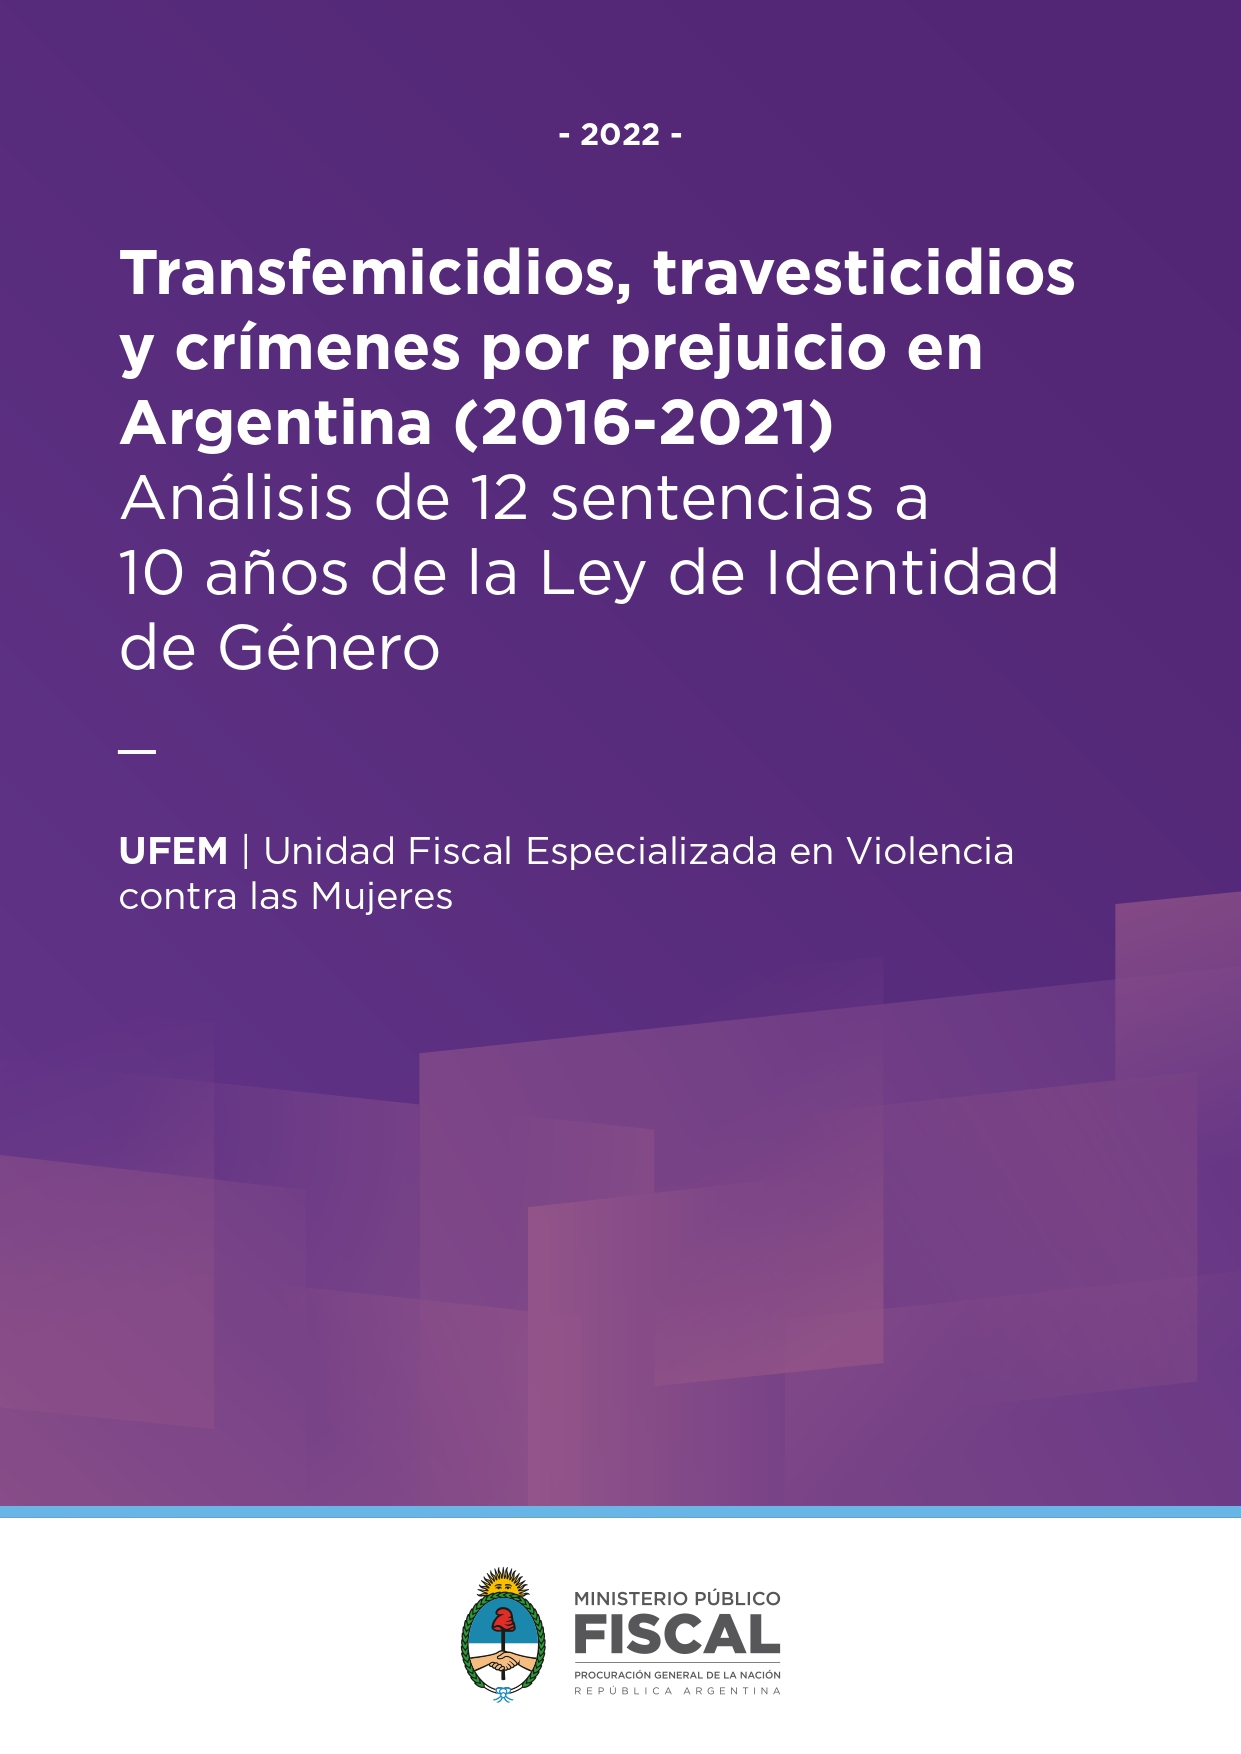 Transfemicidios, travesticidios y crímenes por prejuicio en Argentina (2016-2021). Análisis de 12 sentencias a 10 años de la Ley de Identidad de Género